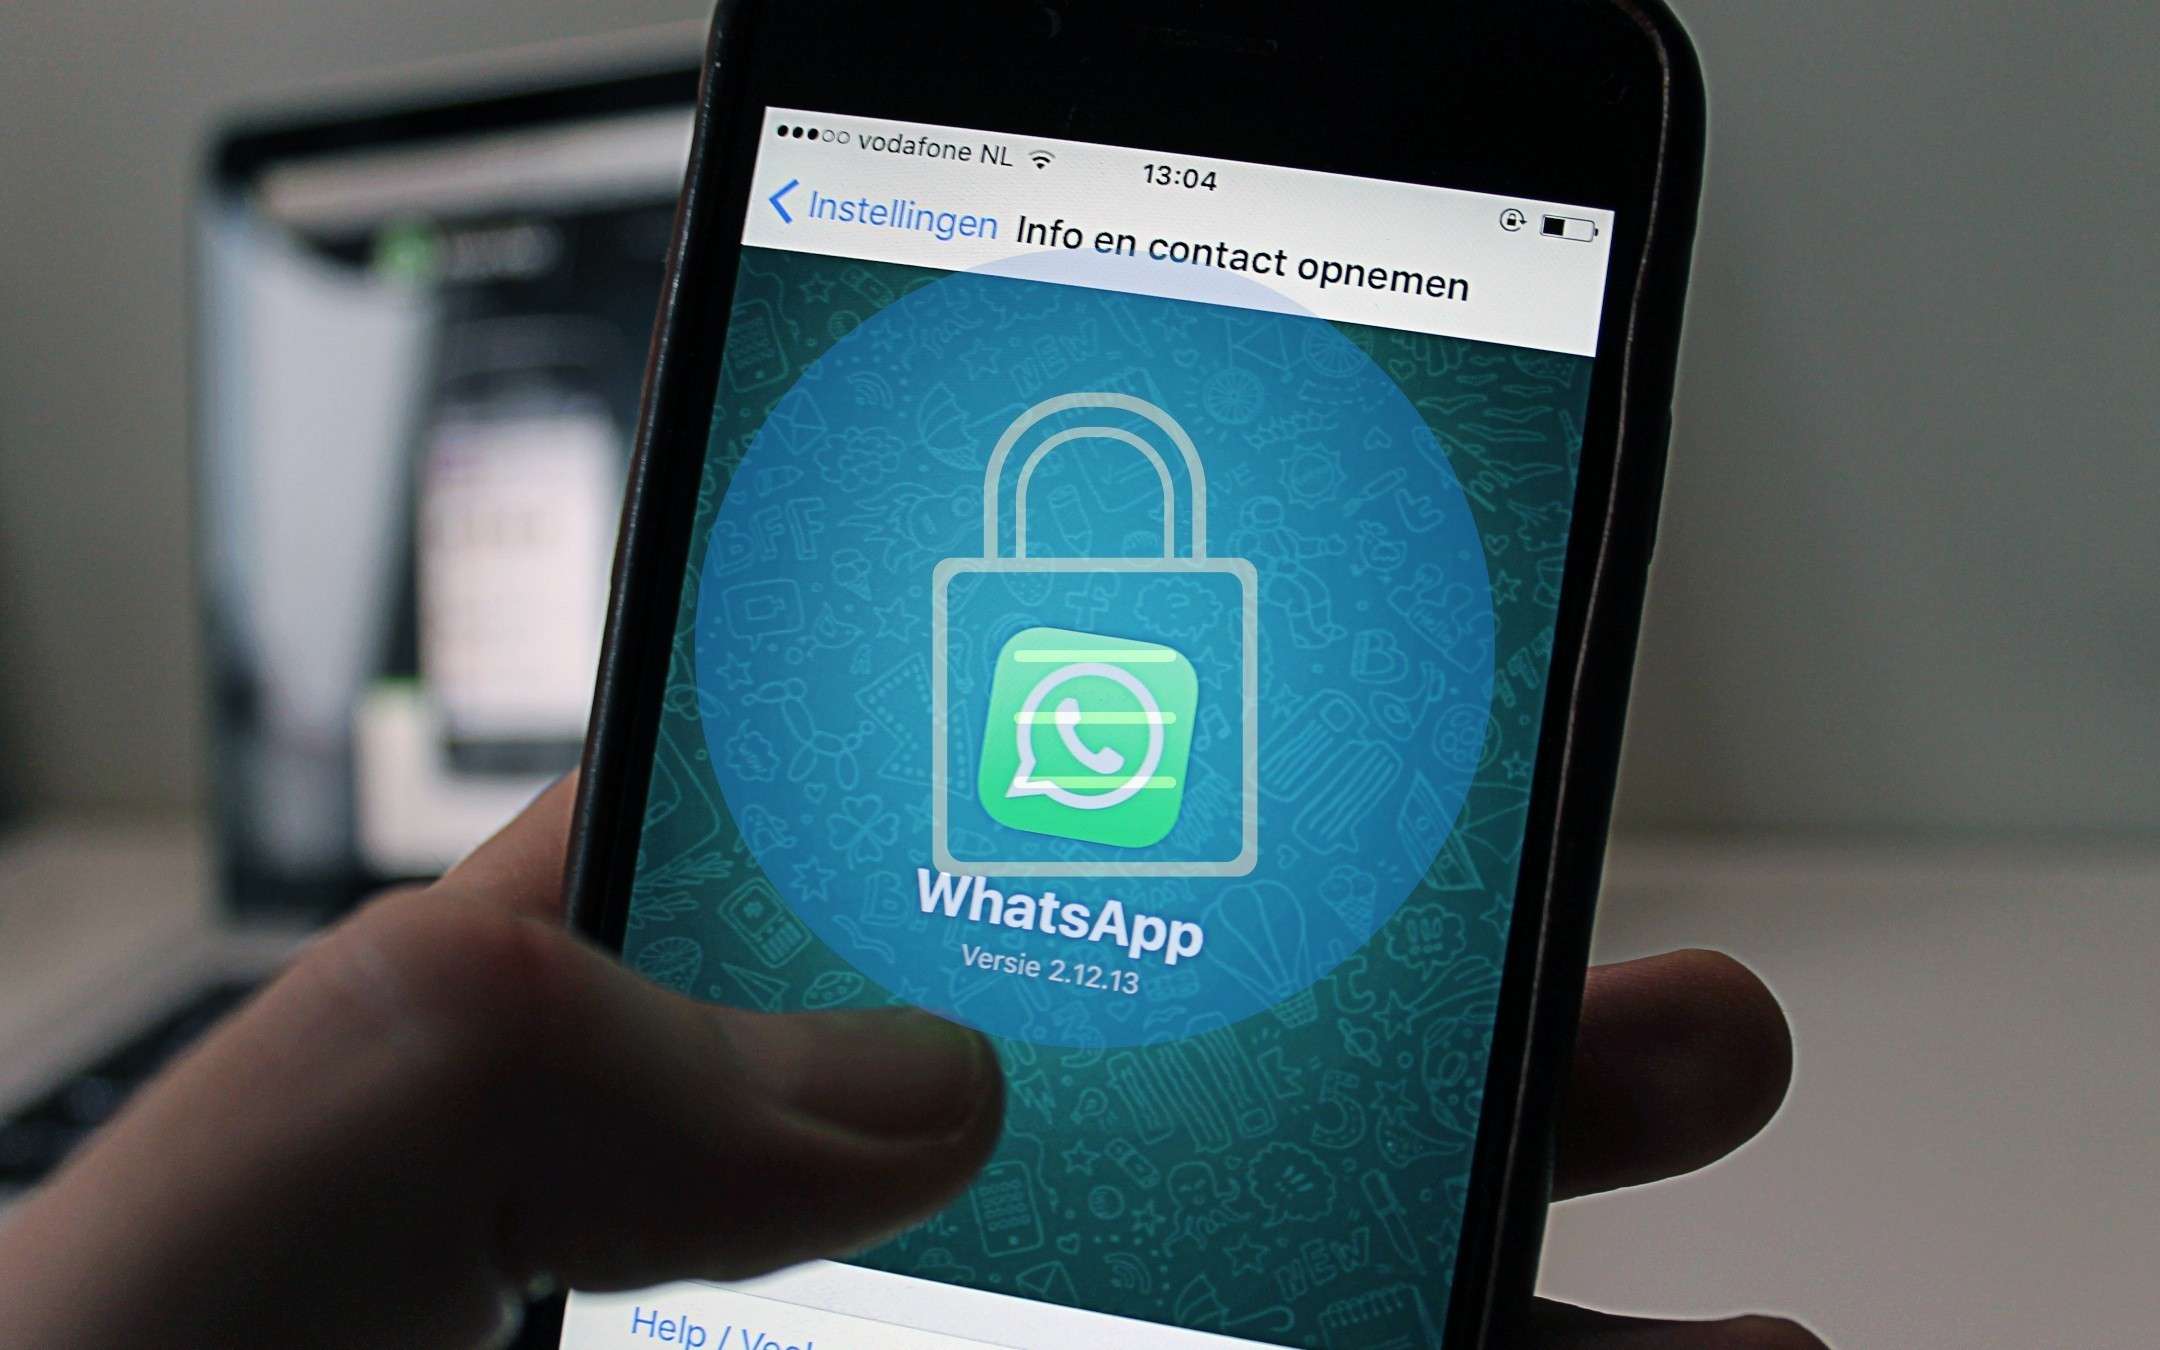 Le versioni di WhatsApp affette dallo spyware